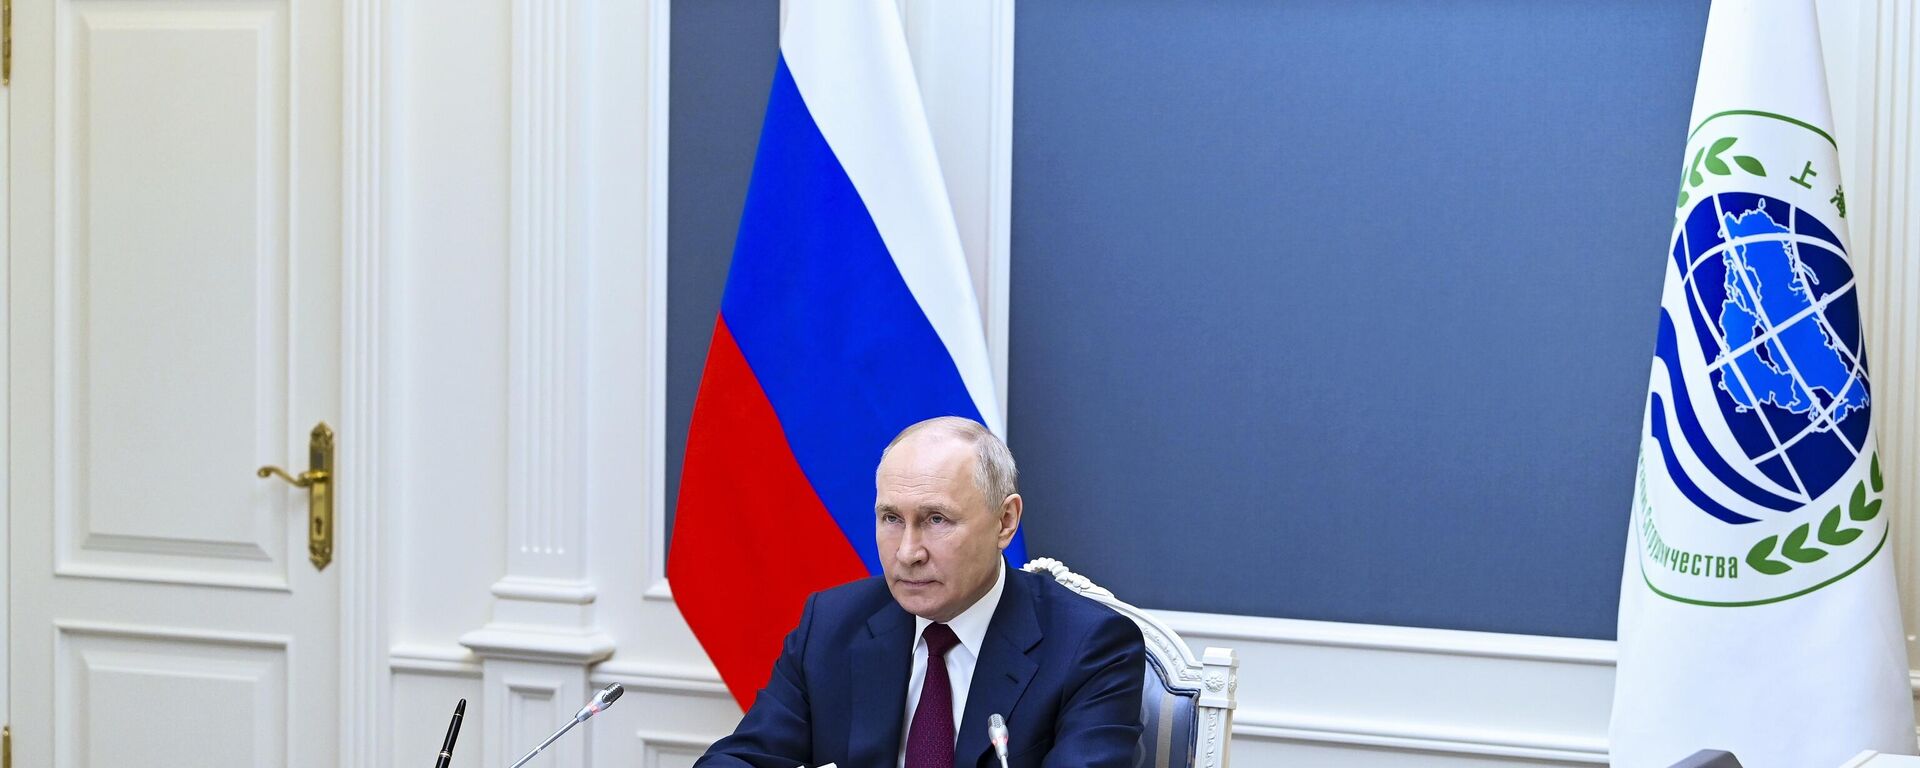 El presidente ruso Vladímir Putin participa de la última reunión de jefes de Estado de la Organización de Cooperación de Shanghai  - Sputnik Mundo, 1920, 05.07.2023